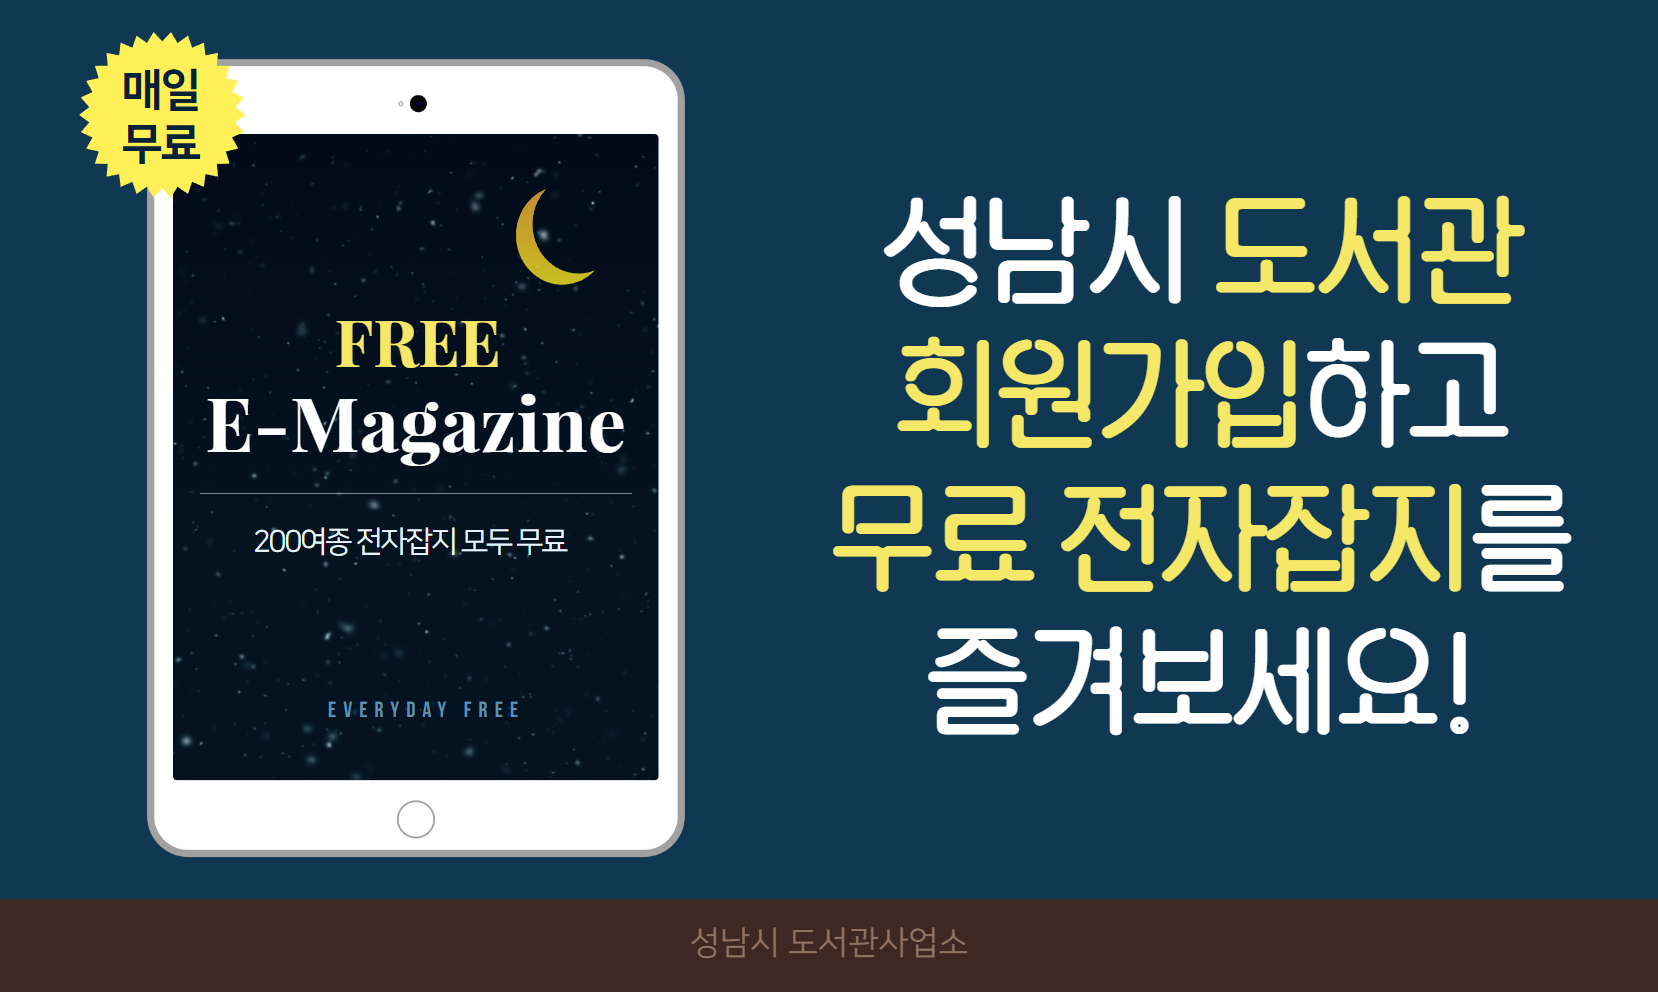 매일무료 FREE E-Magazine 200여종 전자잡지 모두 무료 성남시 도서관 회원가입하고 무료 전자잡지를 즐겨보세요!